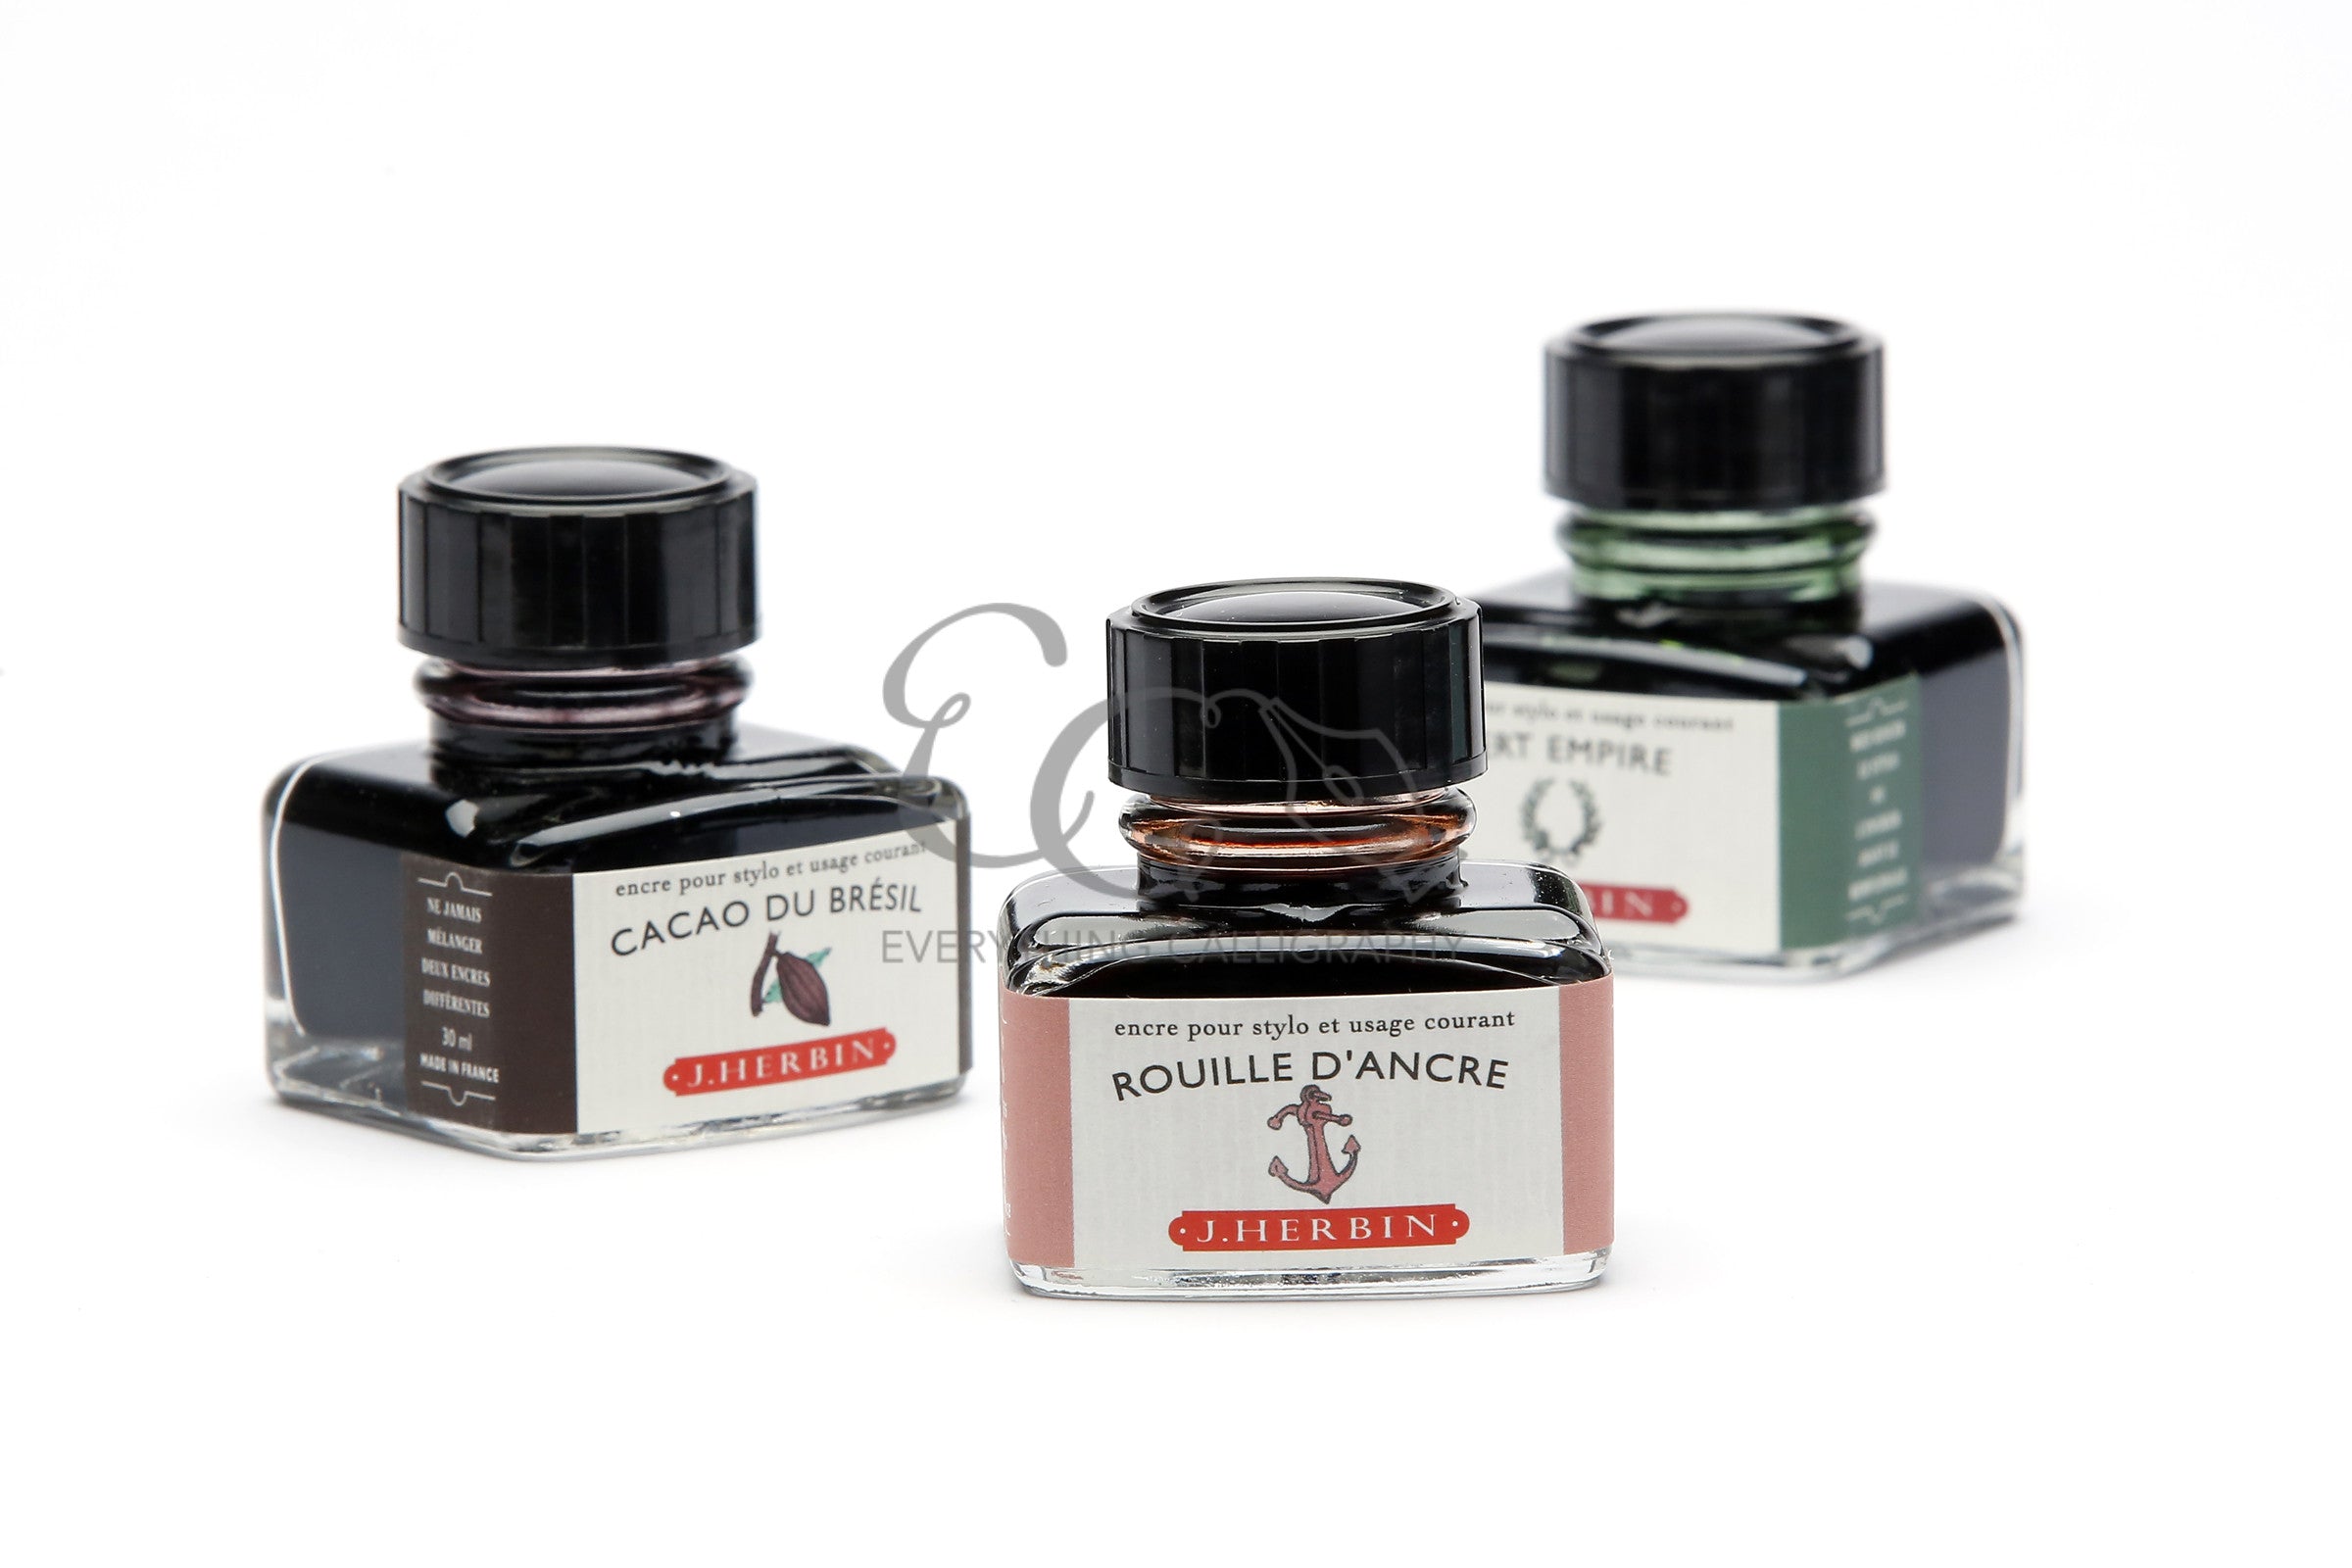 Herbin Rouge Grenat Ink Sample (3ml Vial)